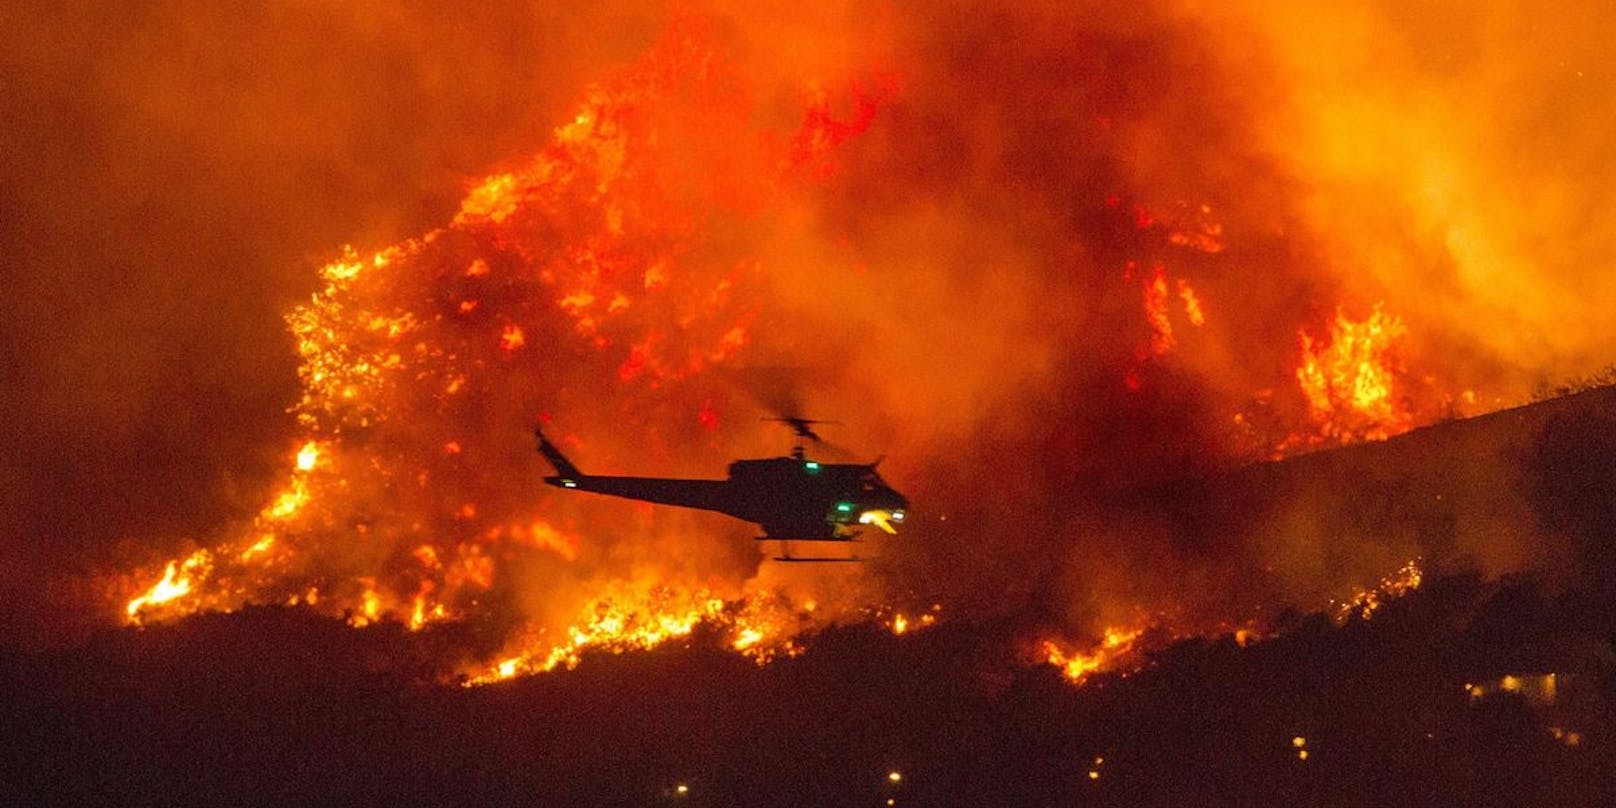 In ganz Kalifornien waren laut einem Lagebericht der Feuerwehr von Samstag zuletzt knapp 12.500 Einsatzkräfte damit beschäftigt, 22 größere Brände einzudämmen. 